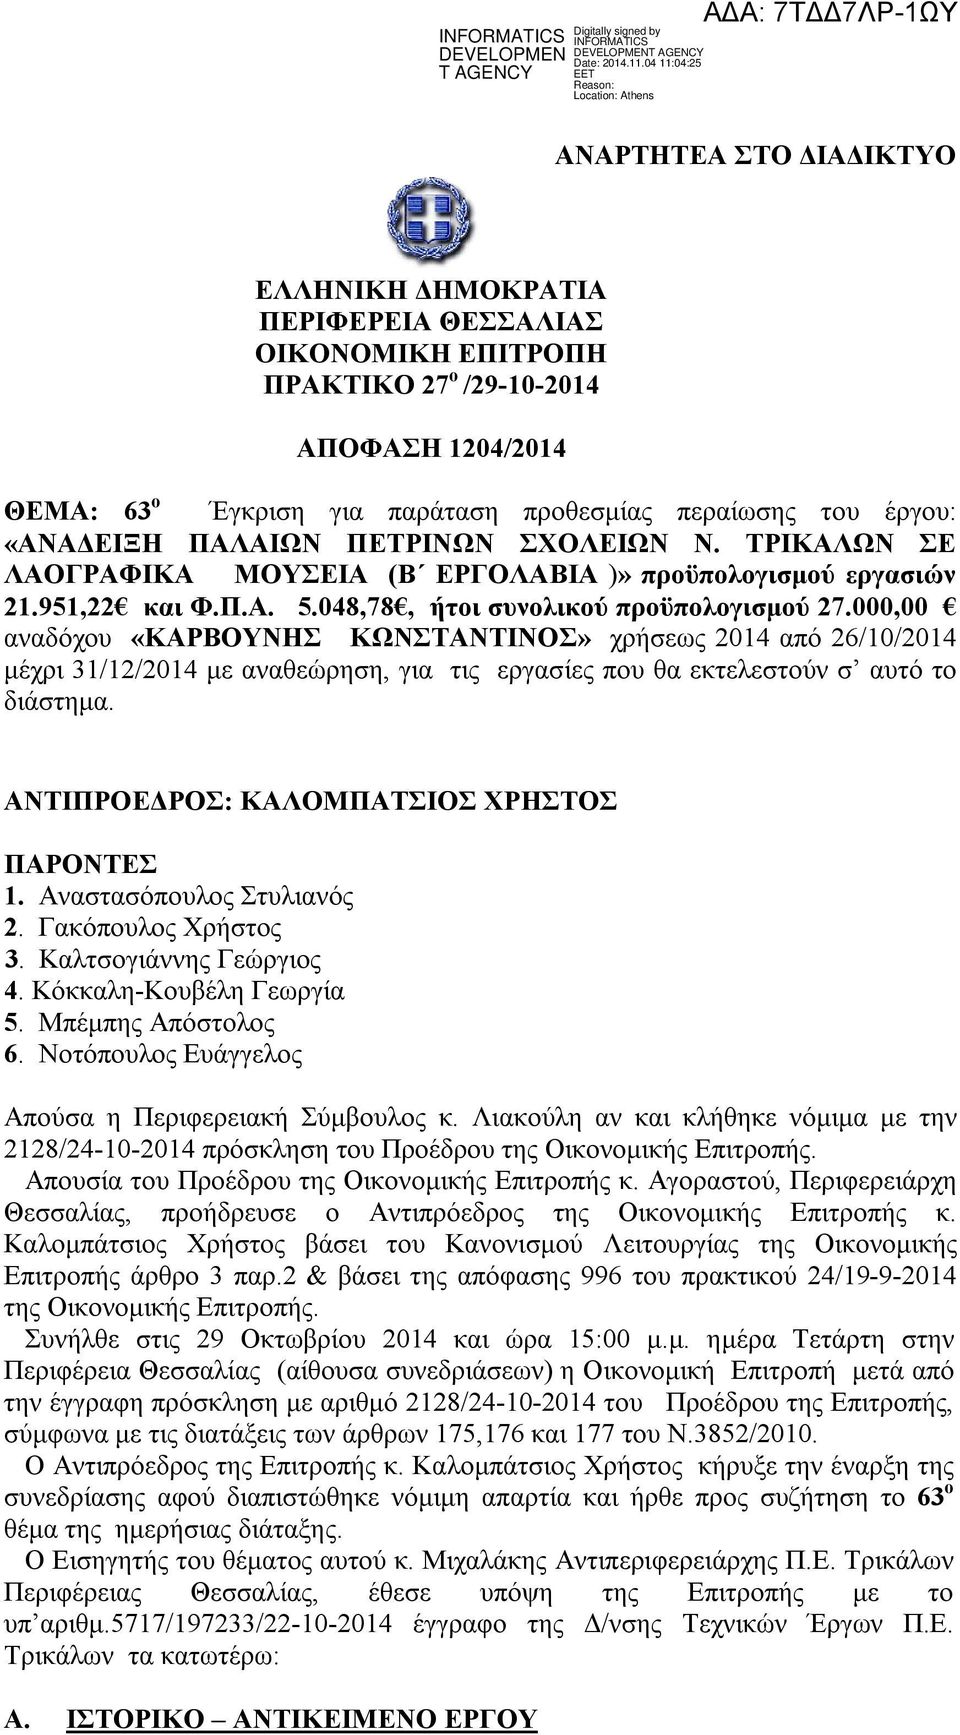 Νοτόπουλος Ευάγγελος Απούσα η Περιφερειακή Σύμβουλος κ. Λιακούλη αν και κλήθηκε νόμιμα με την 2128/24-10-2014 πρόσκληση του Προέδρου της Οικονομικής Επιτροπής.